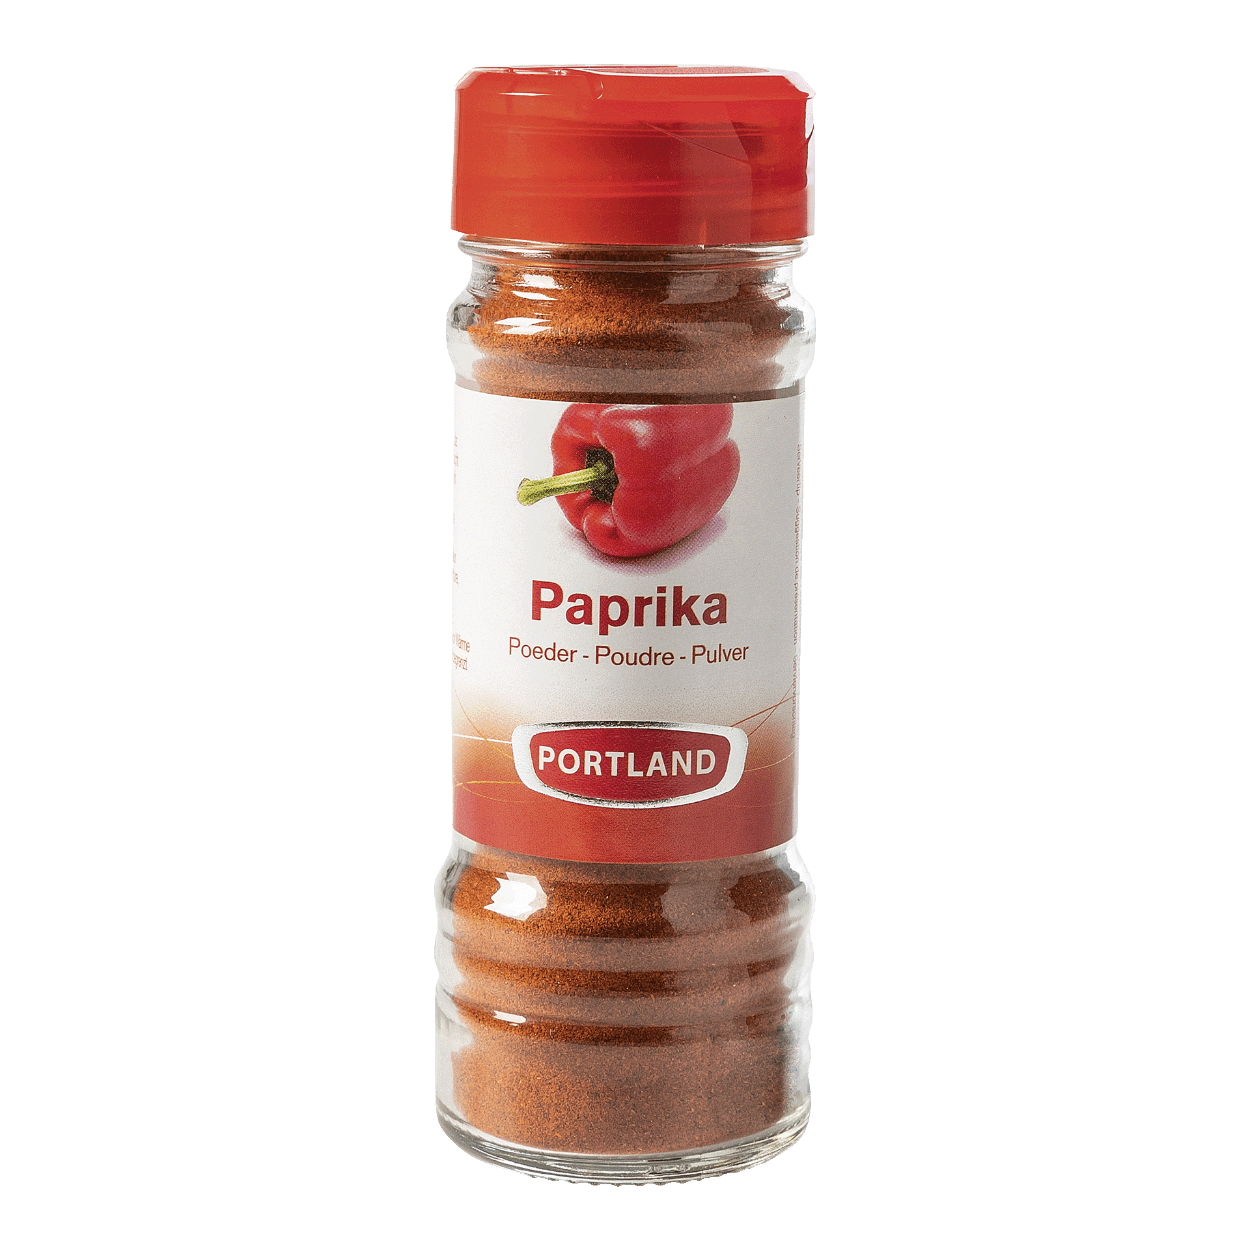 PORTLAND® Paprika en poudre bon marché chez ALDI